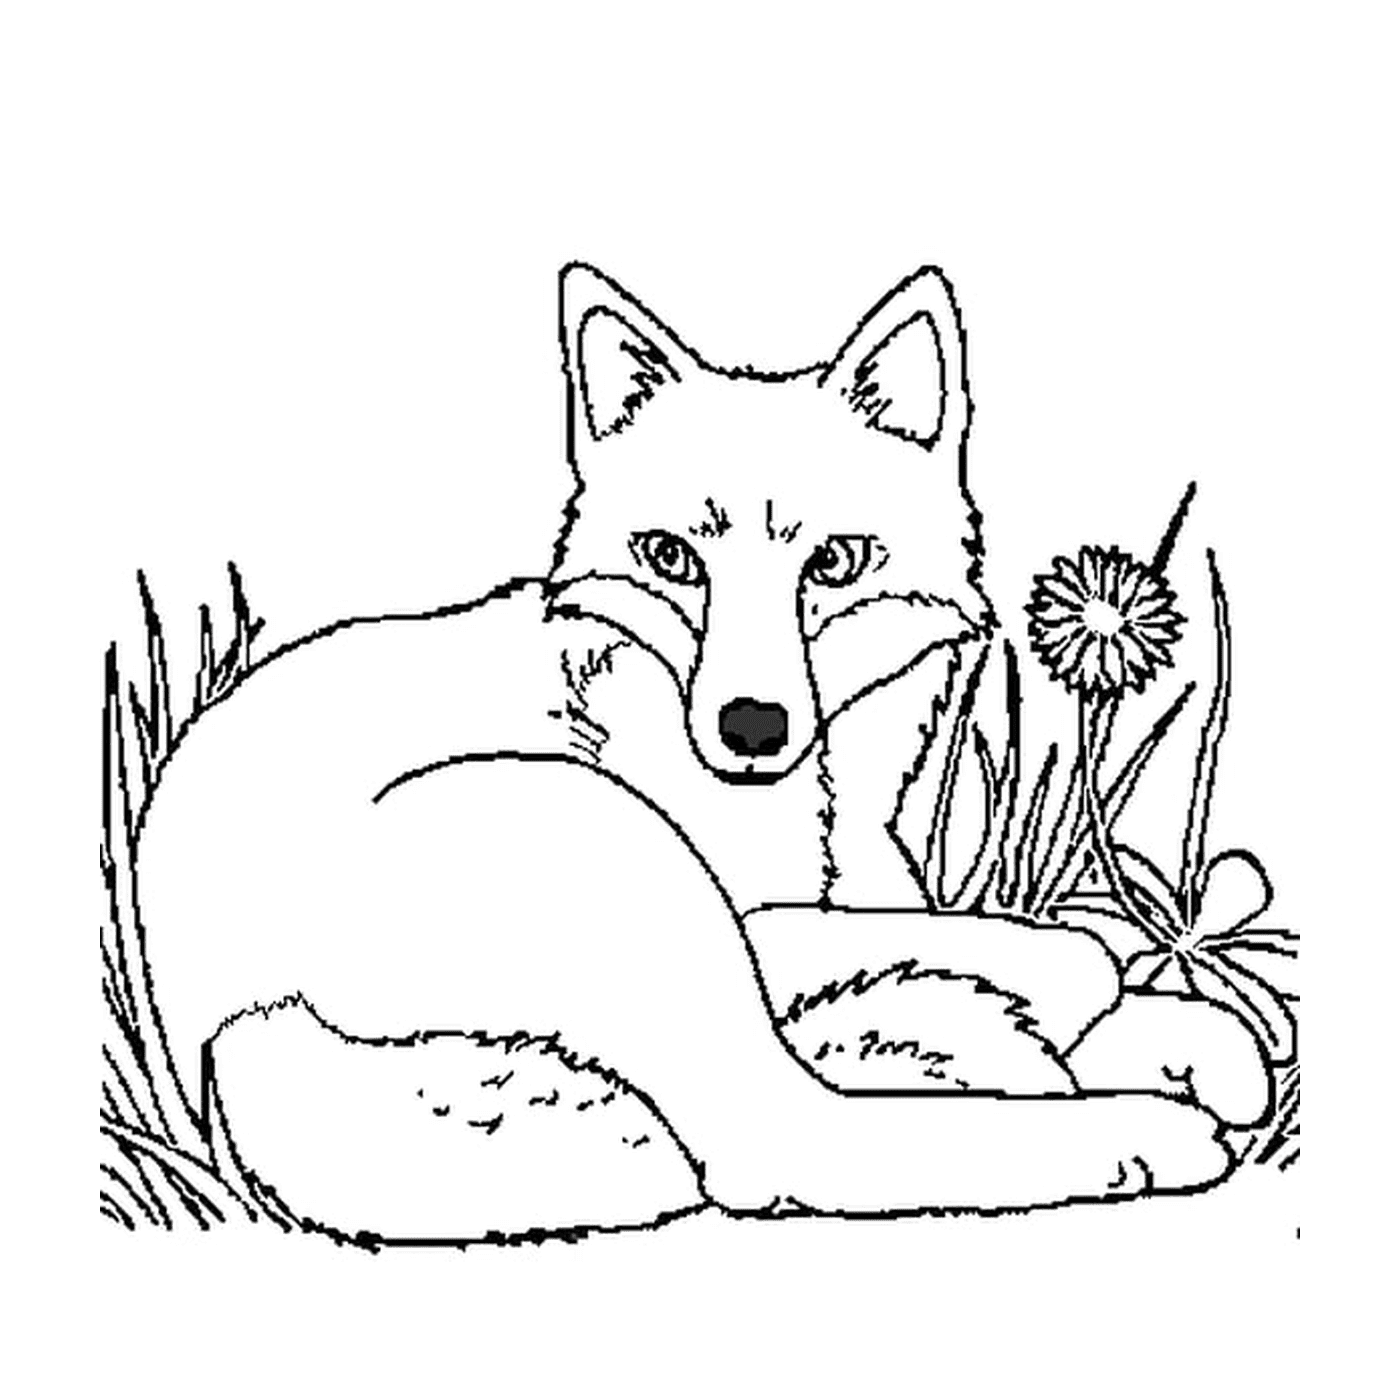  森林里安静的狐狸 